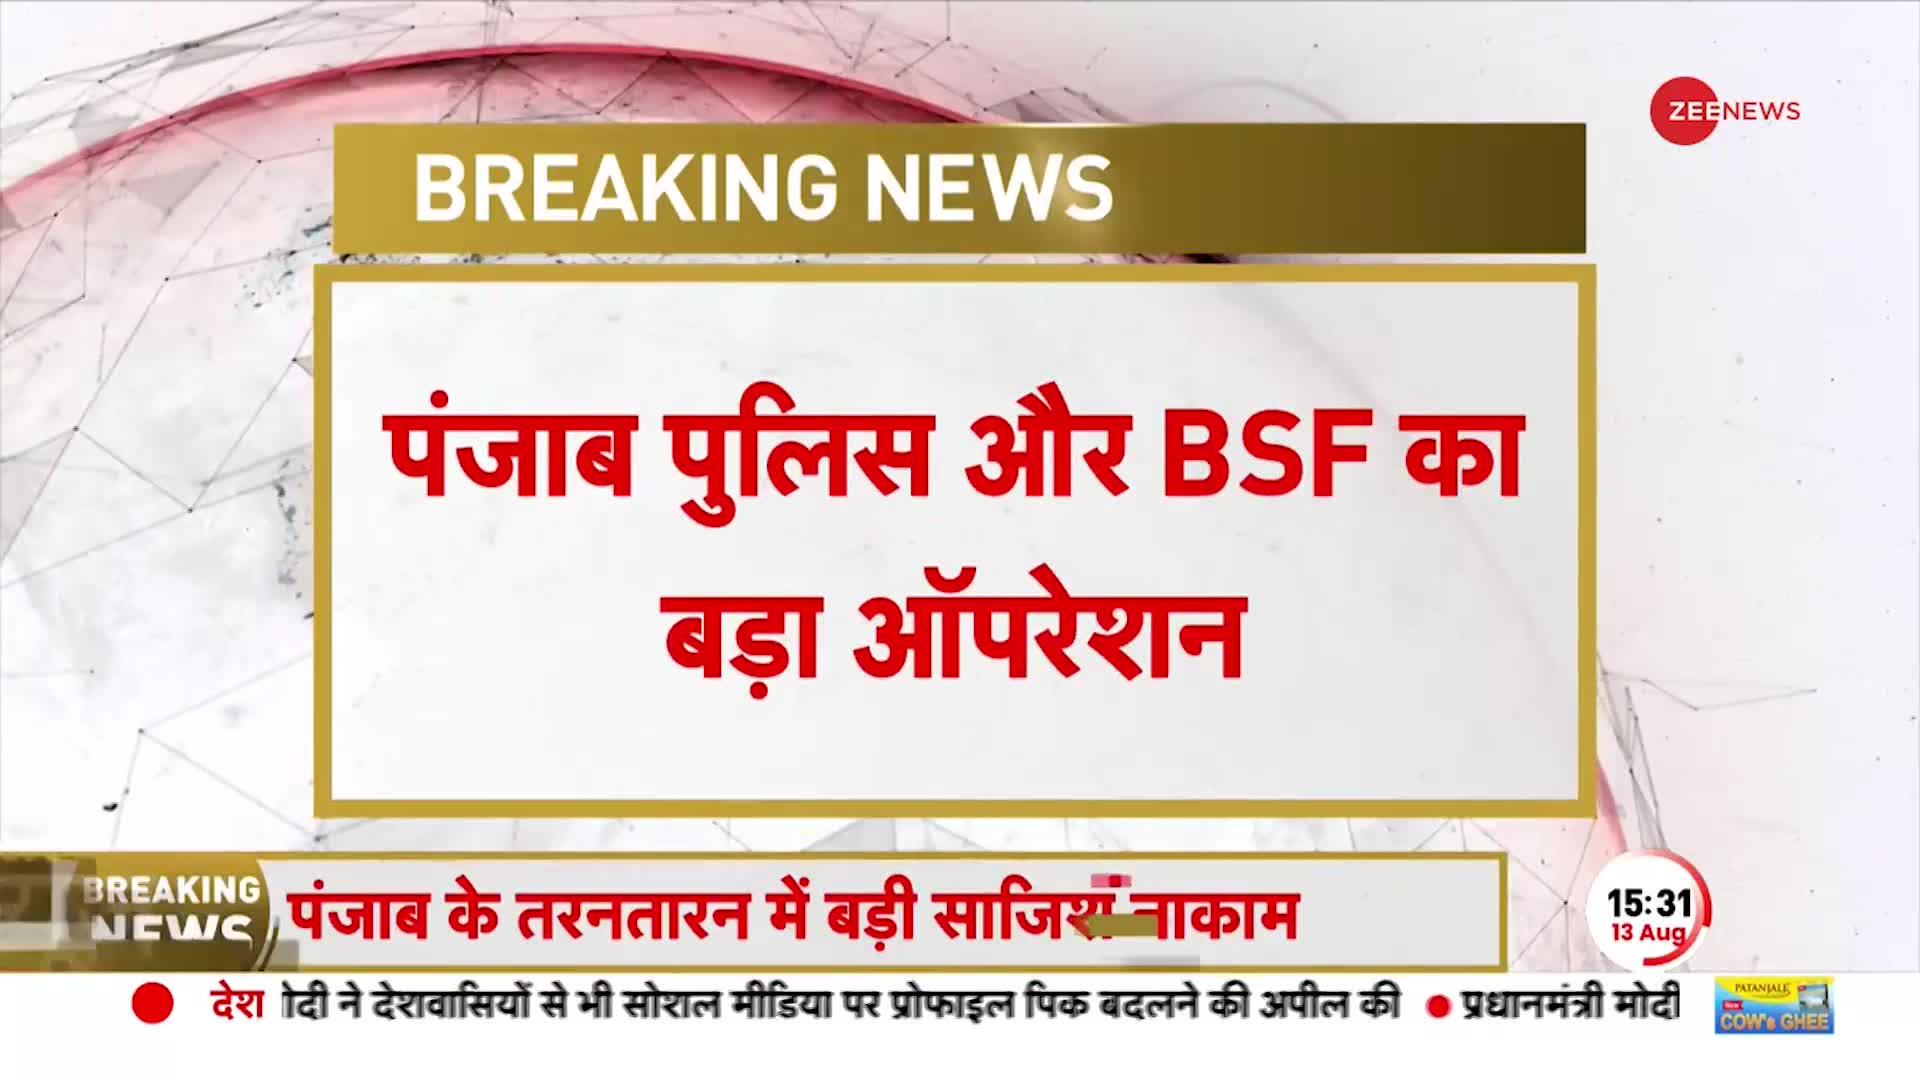 पंजाब में आतंकी साजिश ! BSF को सर्च ऑपरेशन में मिला टूटा हुआ Drone